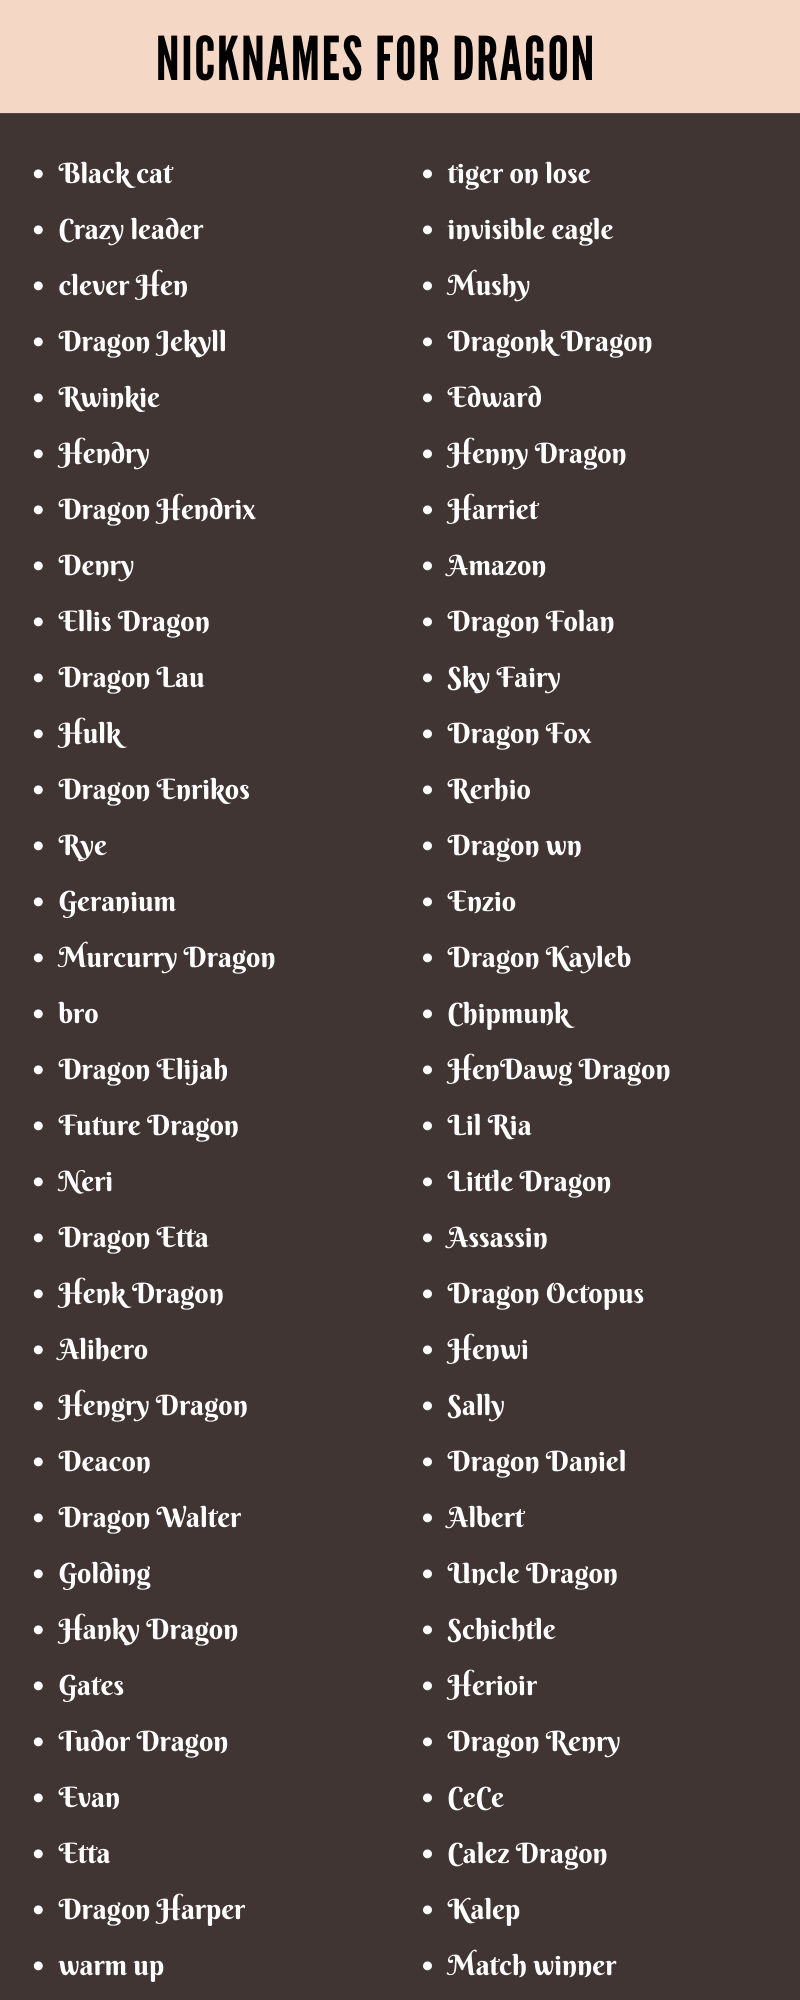 Nicknames for Dragon